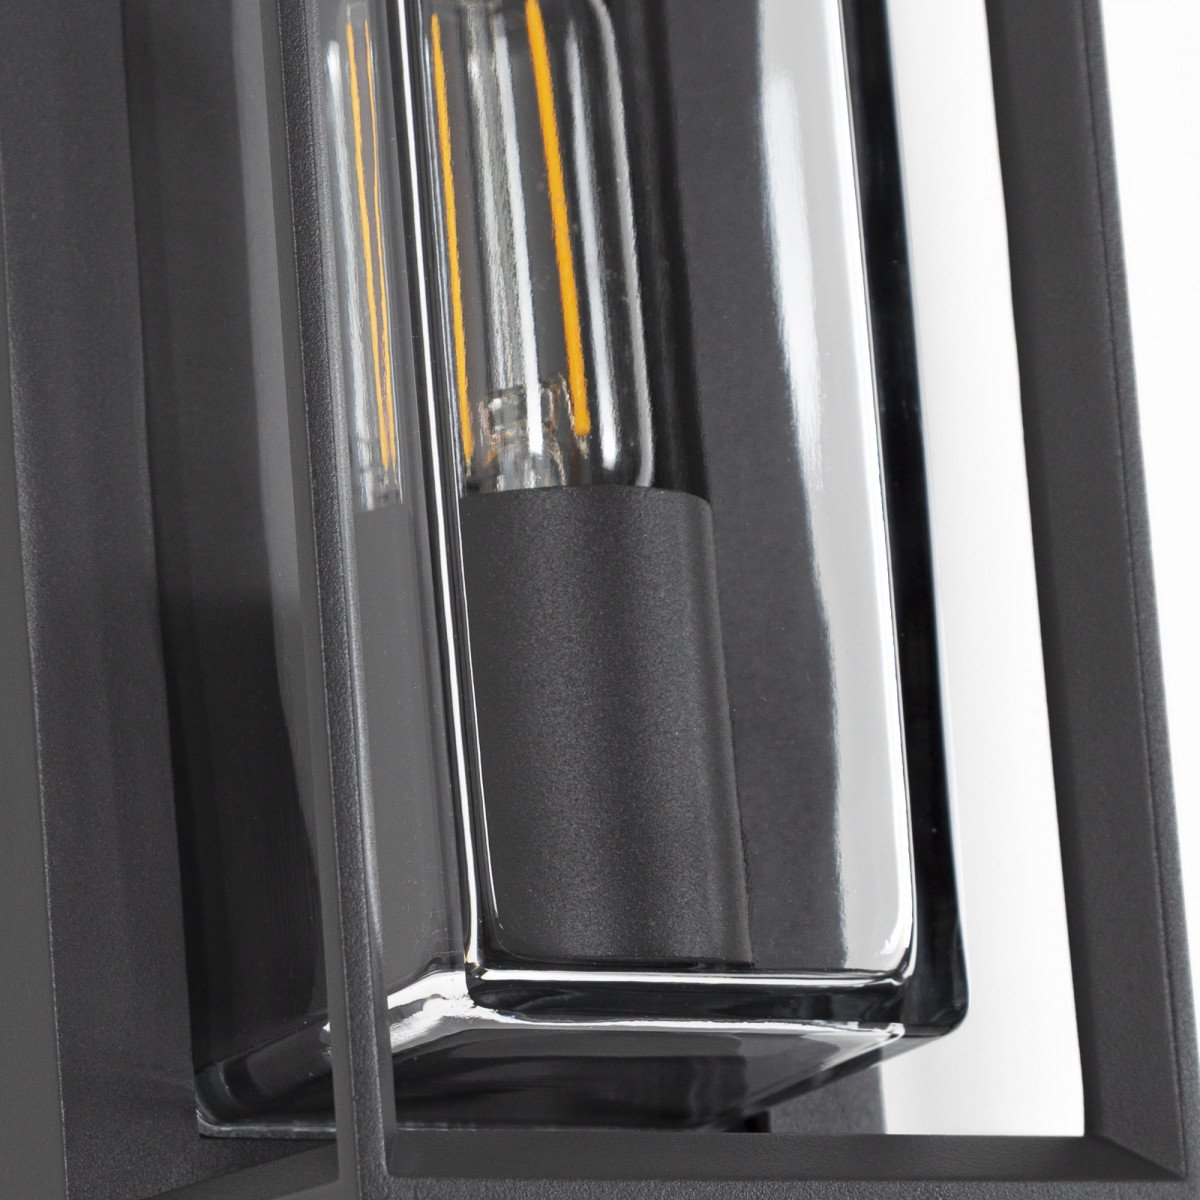 Applique moderne anthracite, design de boîte moderne, cadre gris foncé avec verre rectangulaire transparent, la source de lumière est visible dans le modèle de luminaire Eaton